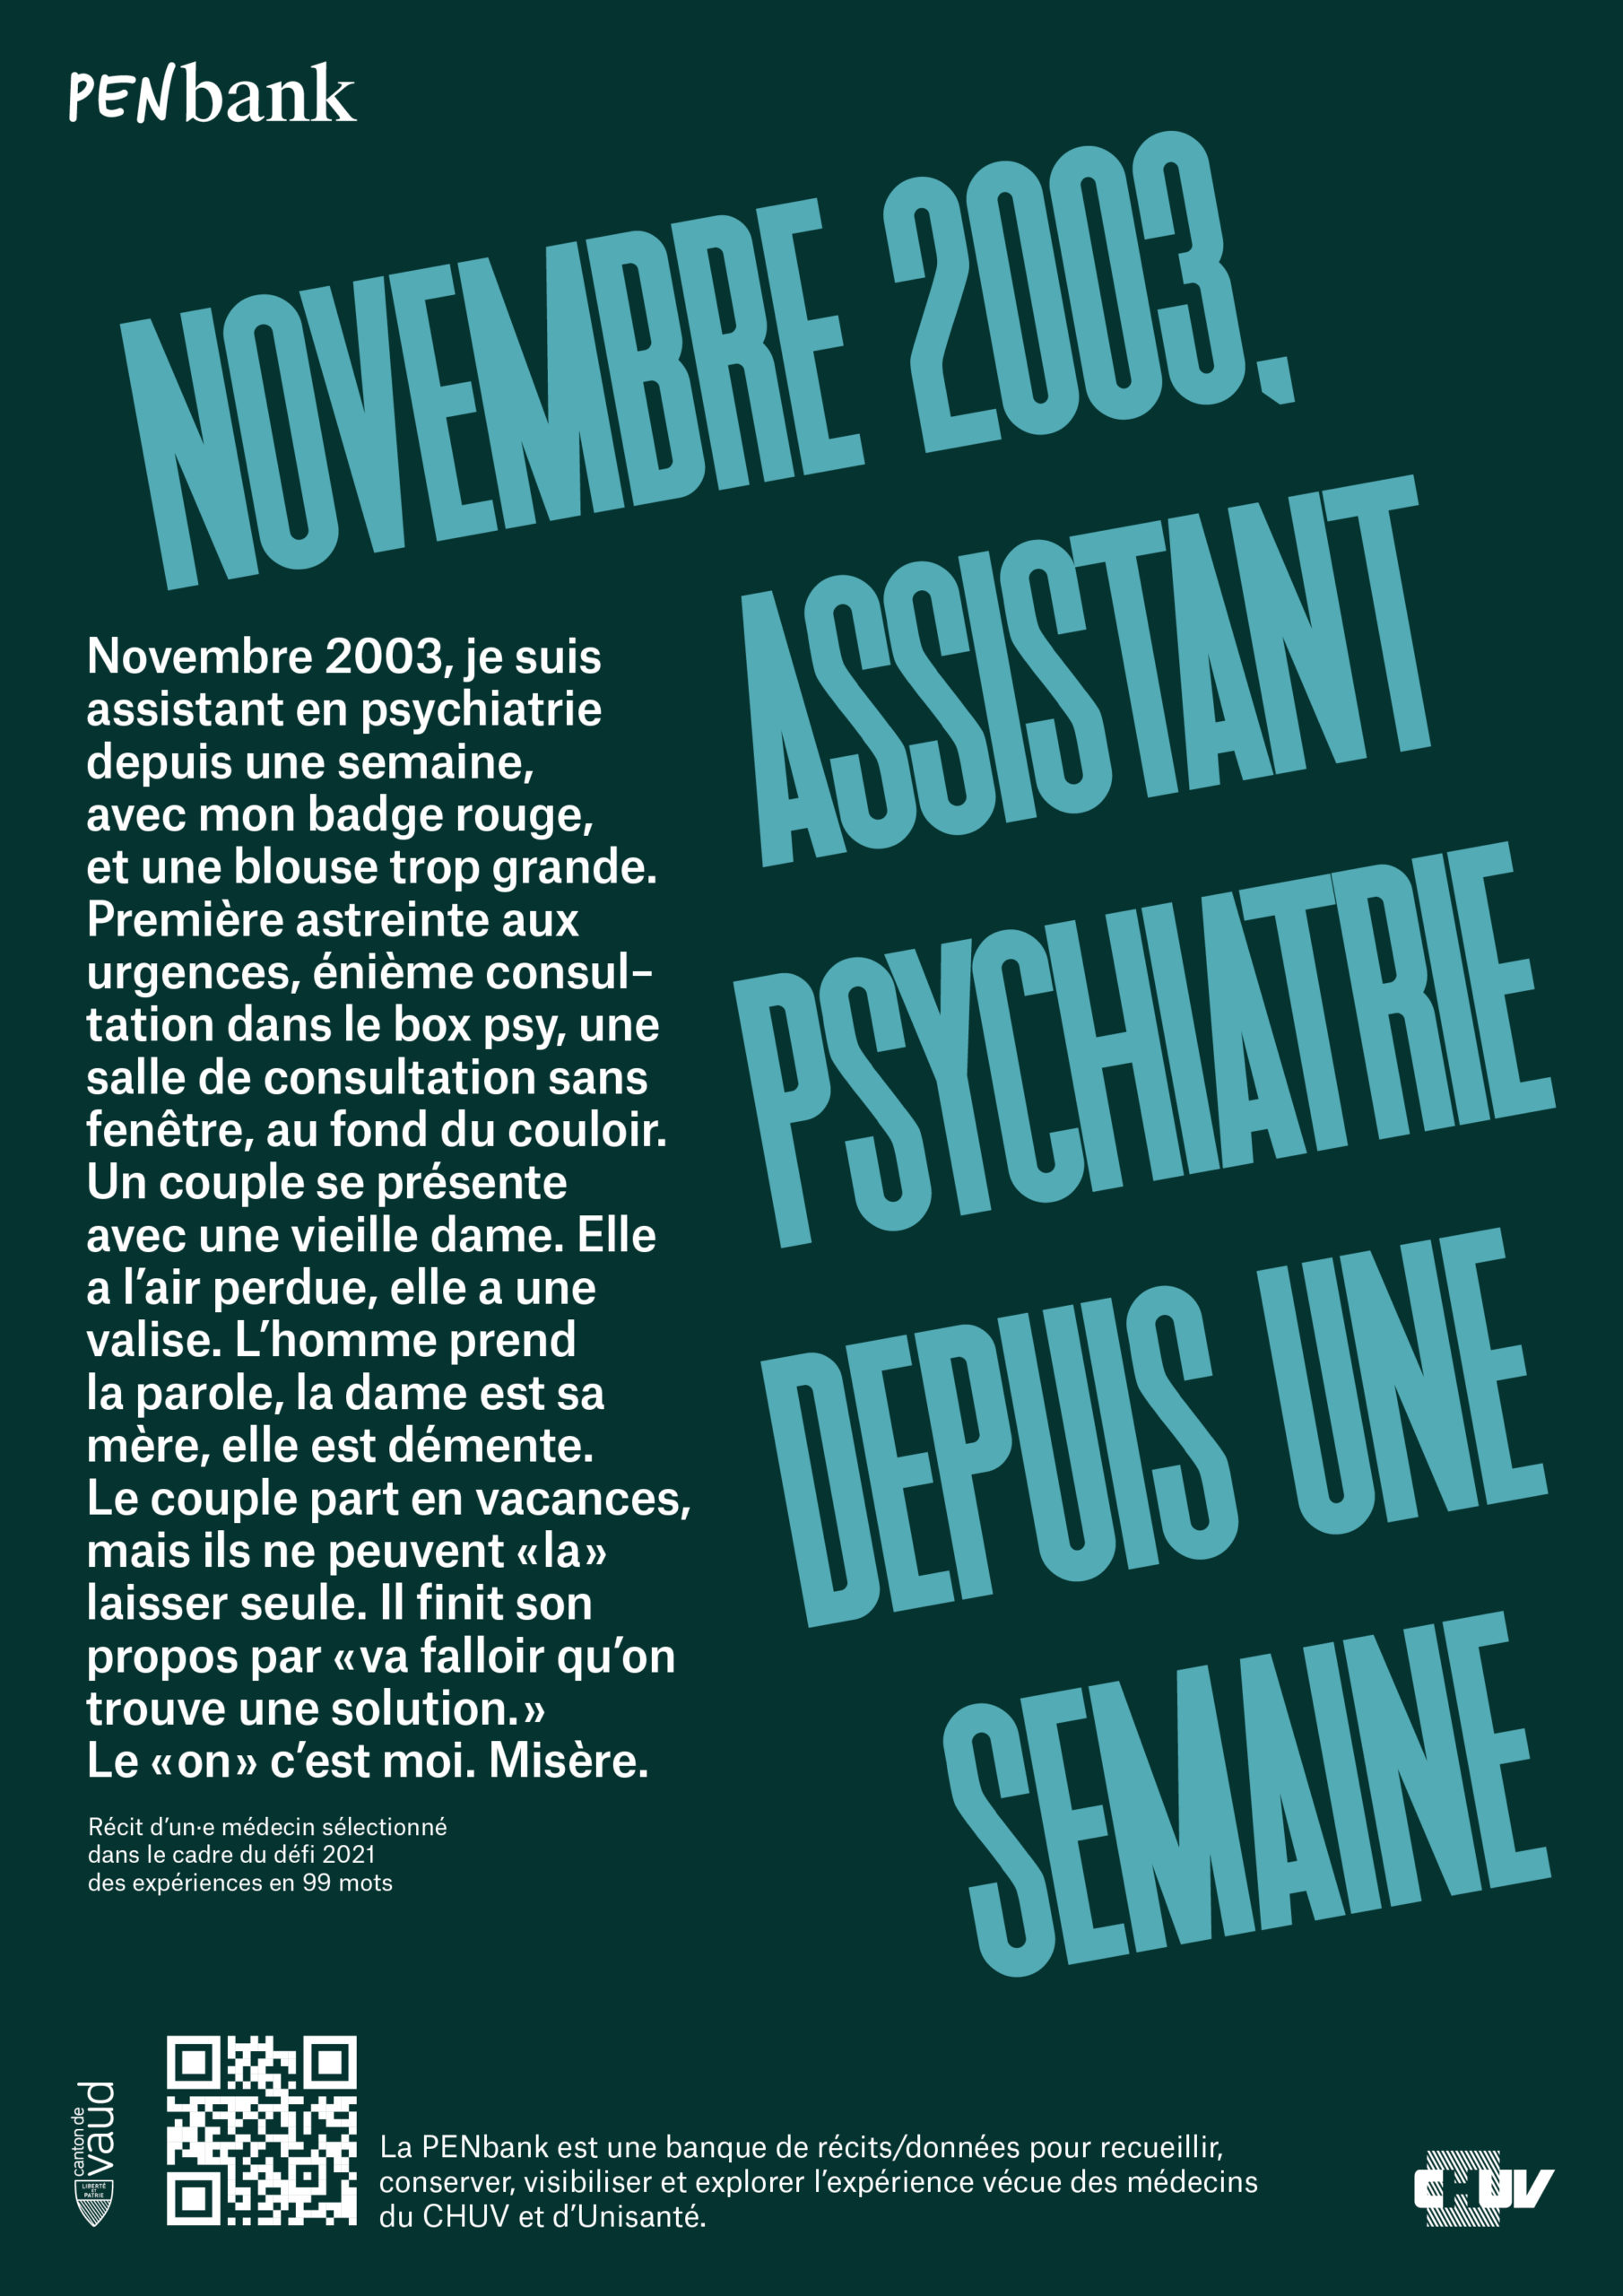 affiche graphique pour PENbank avec exergue "Novembre 2003, assistante psychiatre, depuis une semaine"